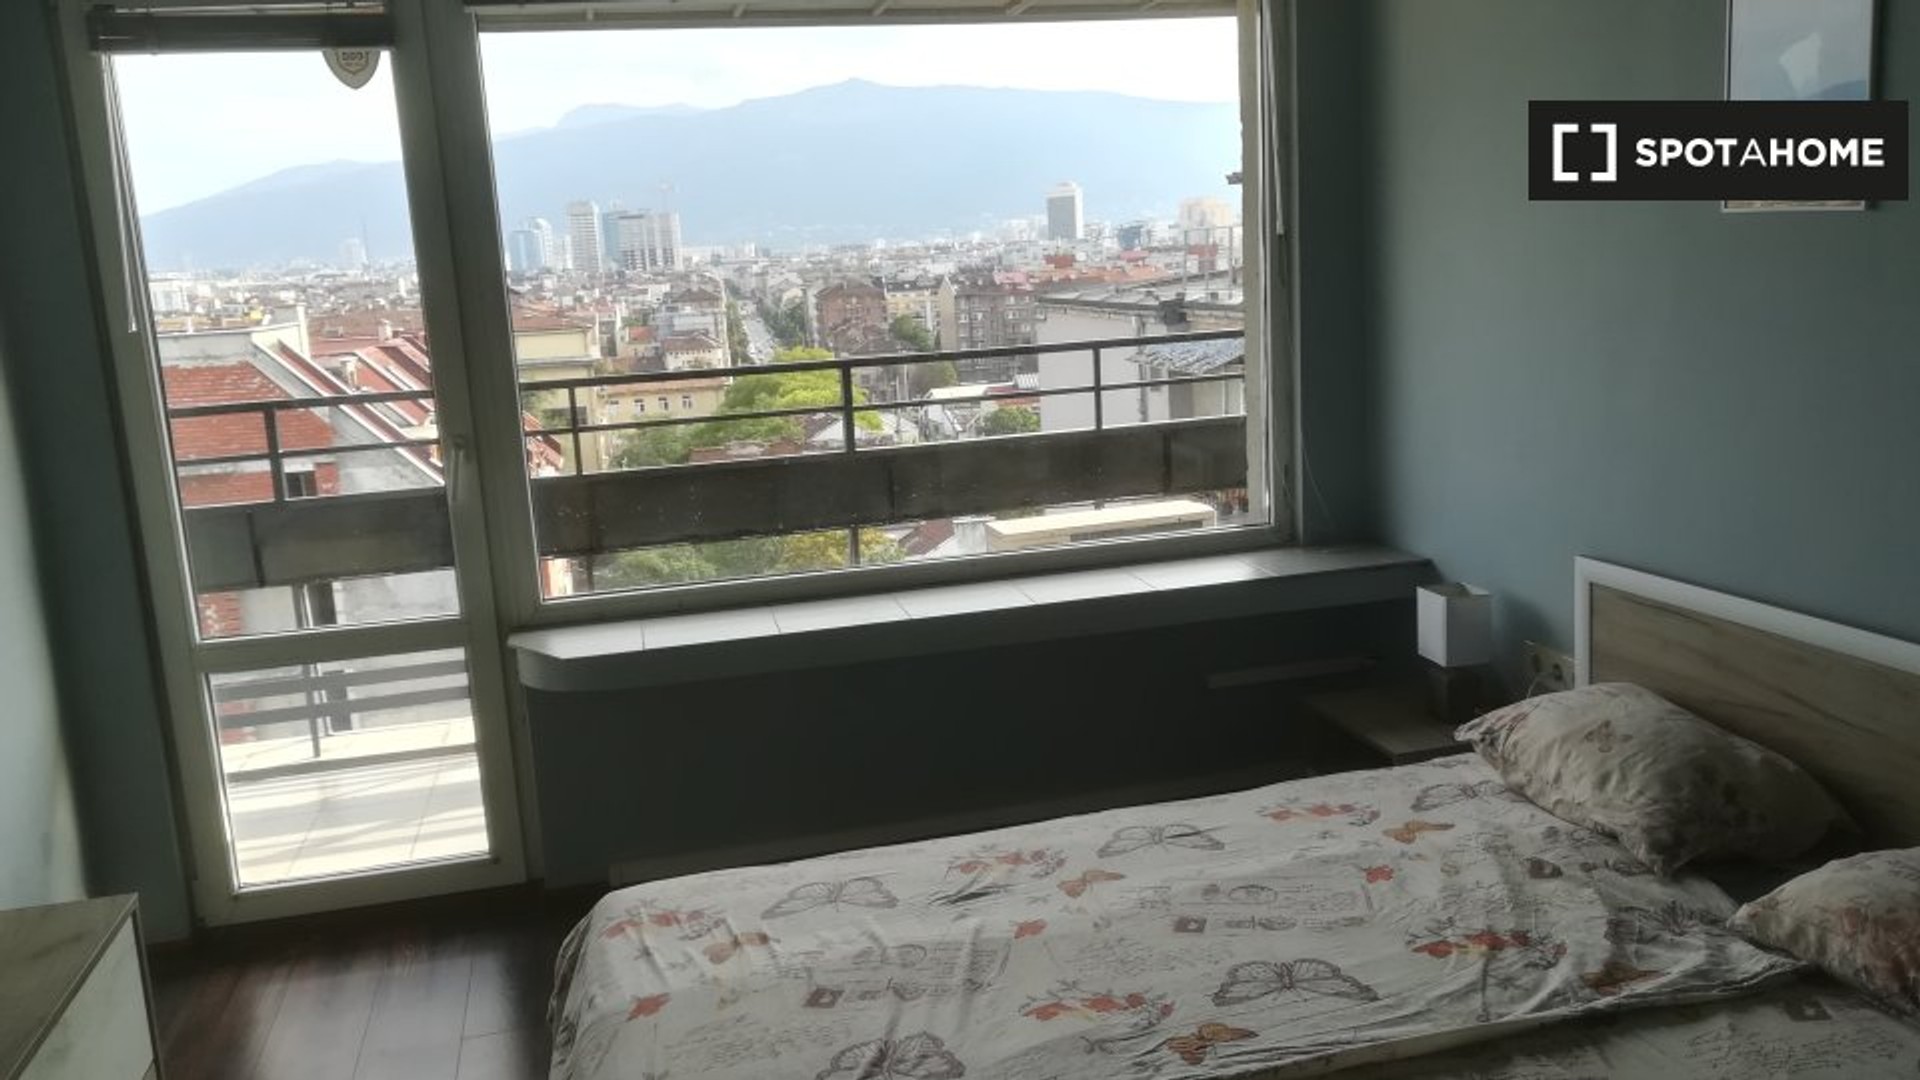 Bright private room in Sofia